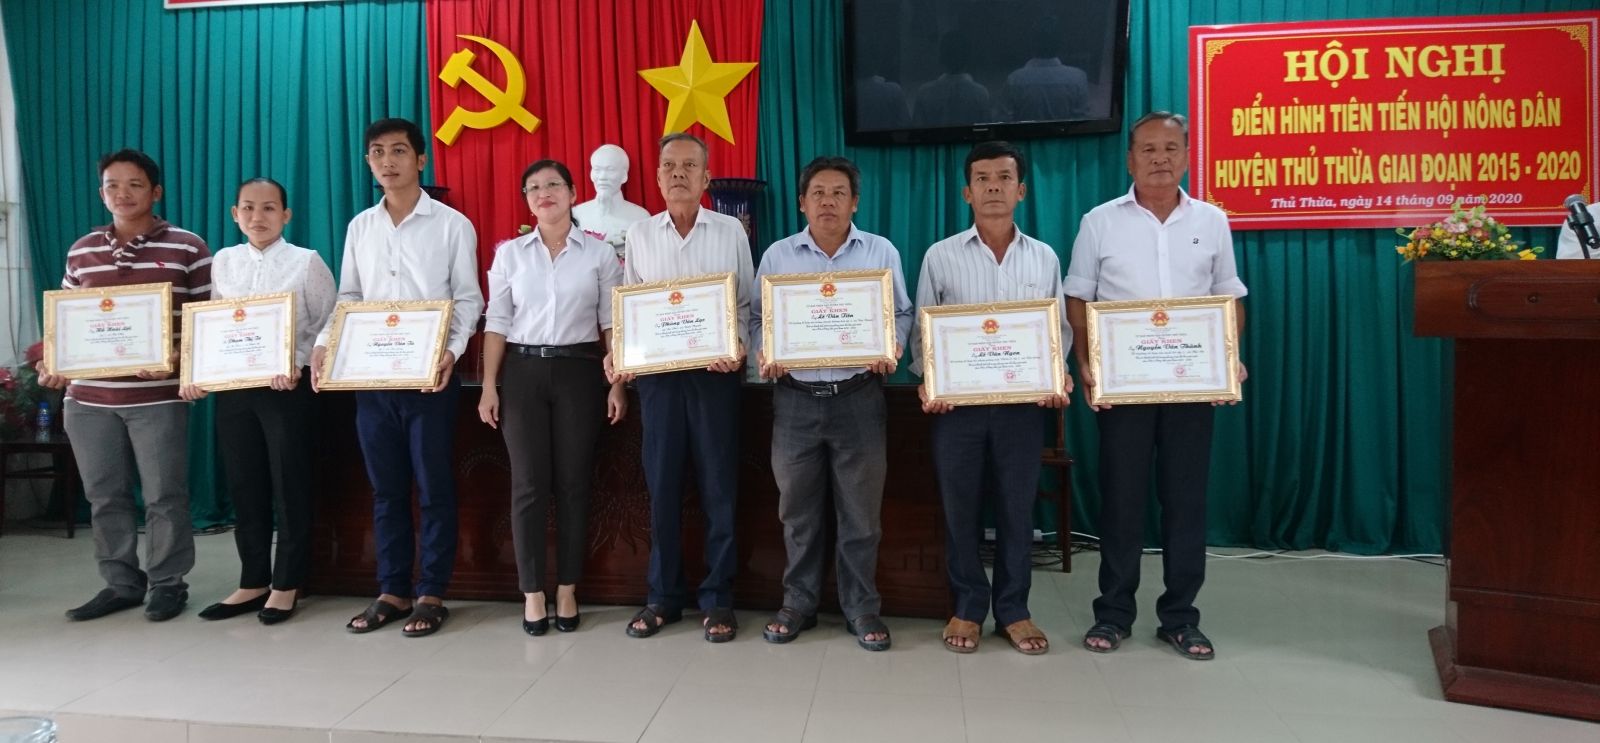 Anh Lê Văn Tiên (thứ 3, phải qua) được huyện khen thưởng tại Hội nghị điển hình tiên tiến Hội Nông dân huyện Thủ Thừa giai đoạn 2015-2020